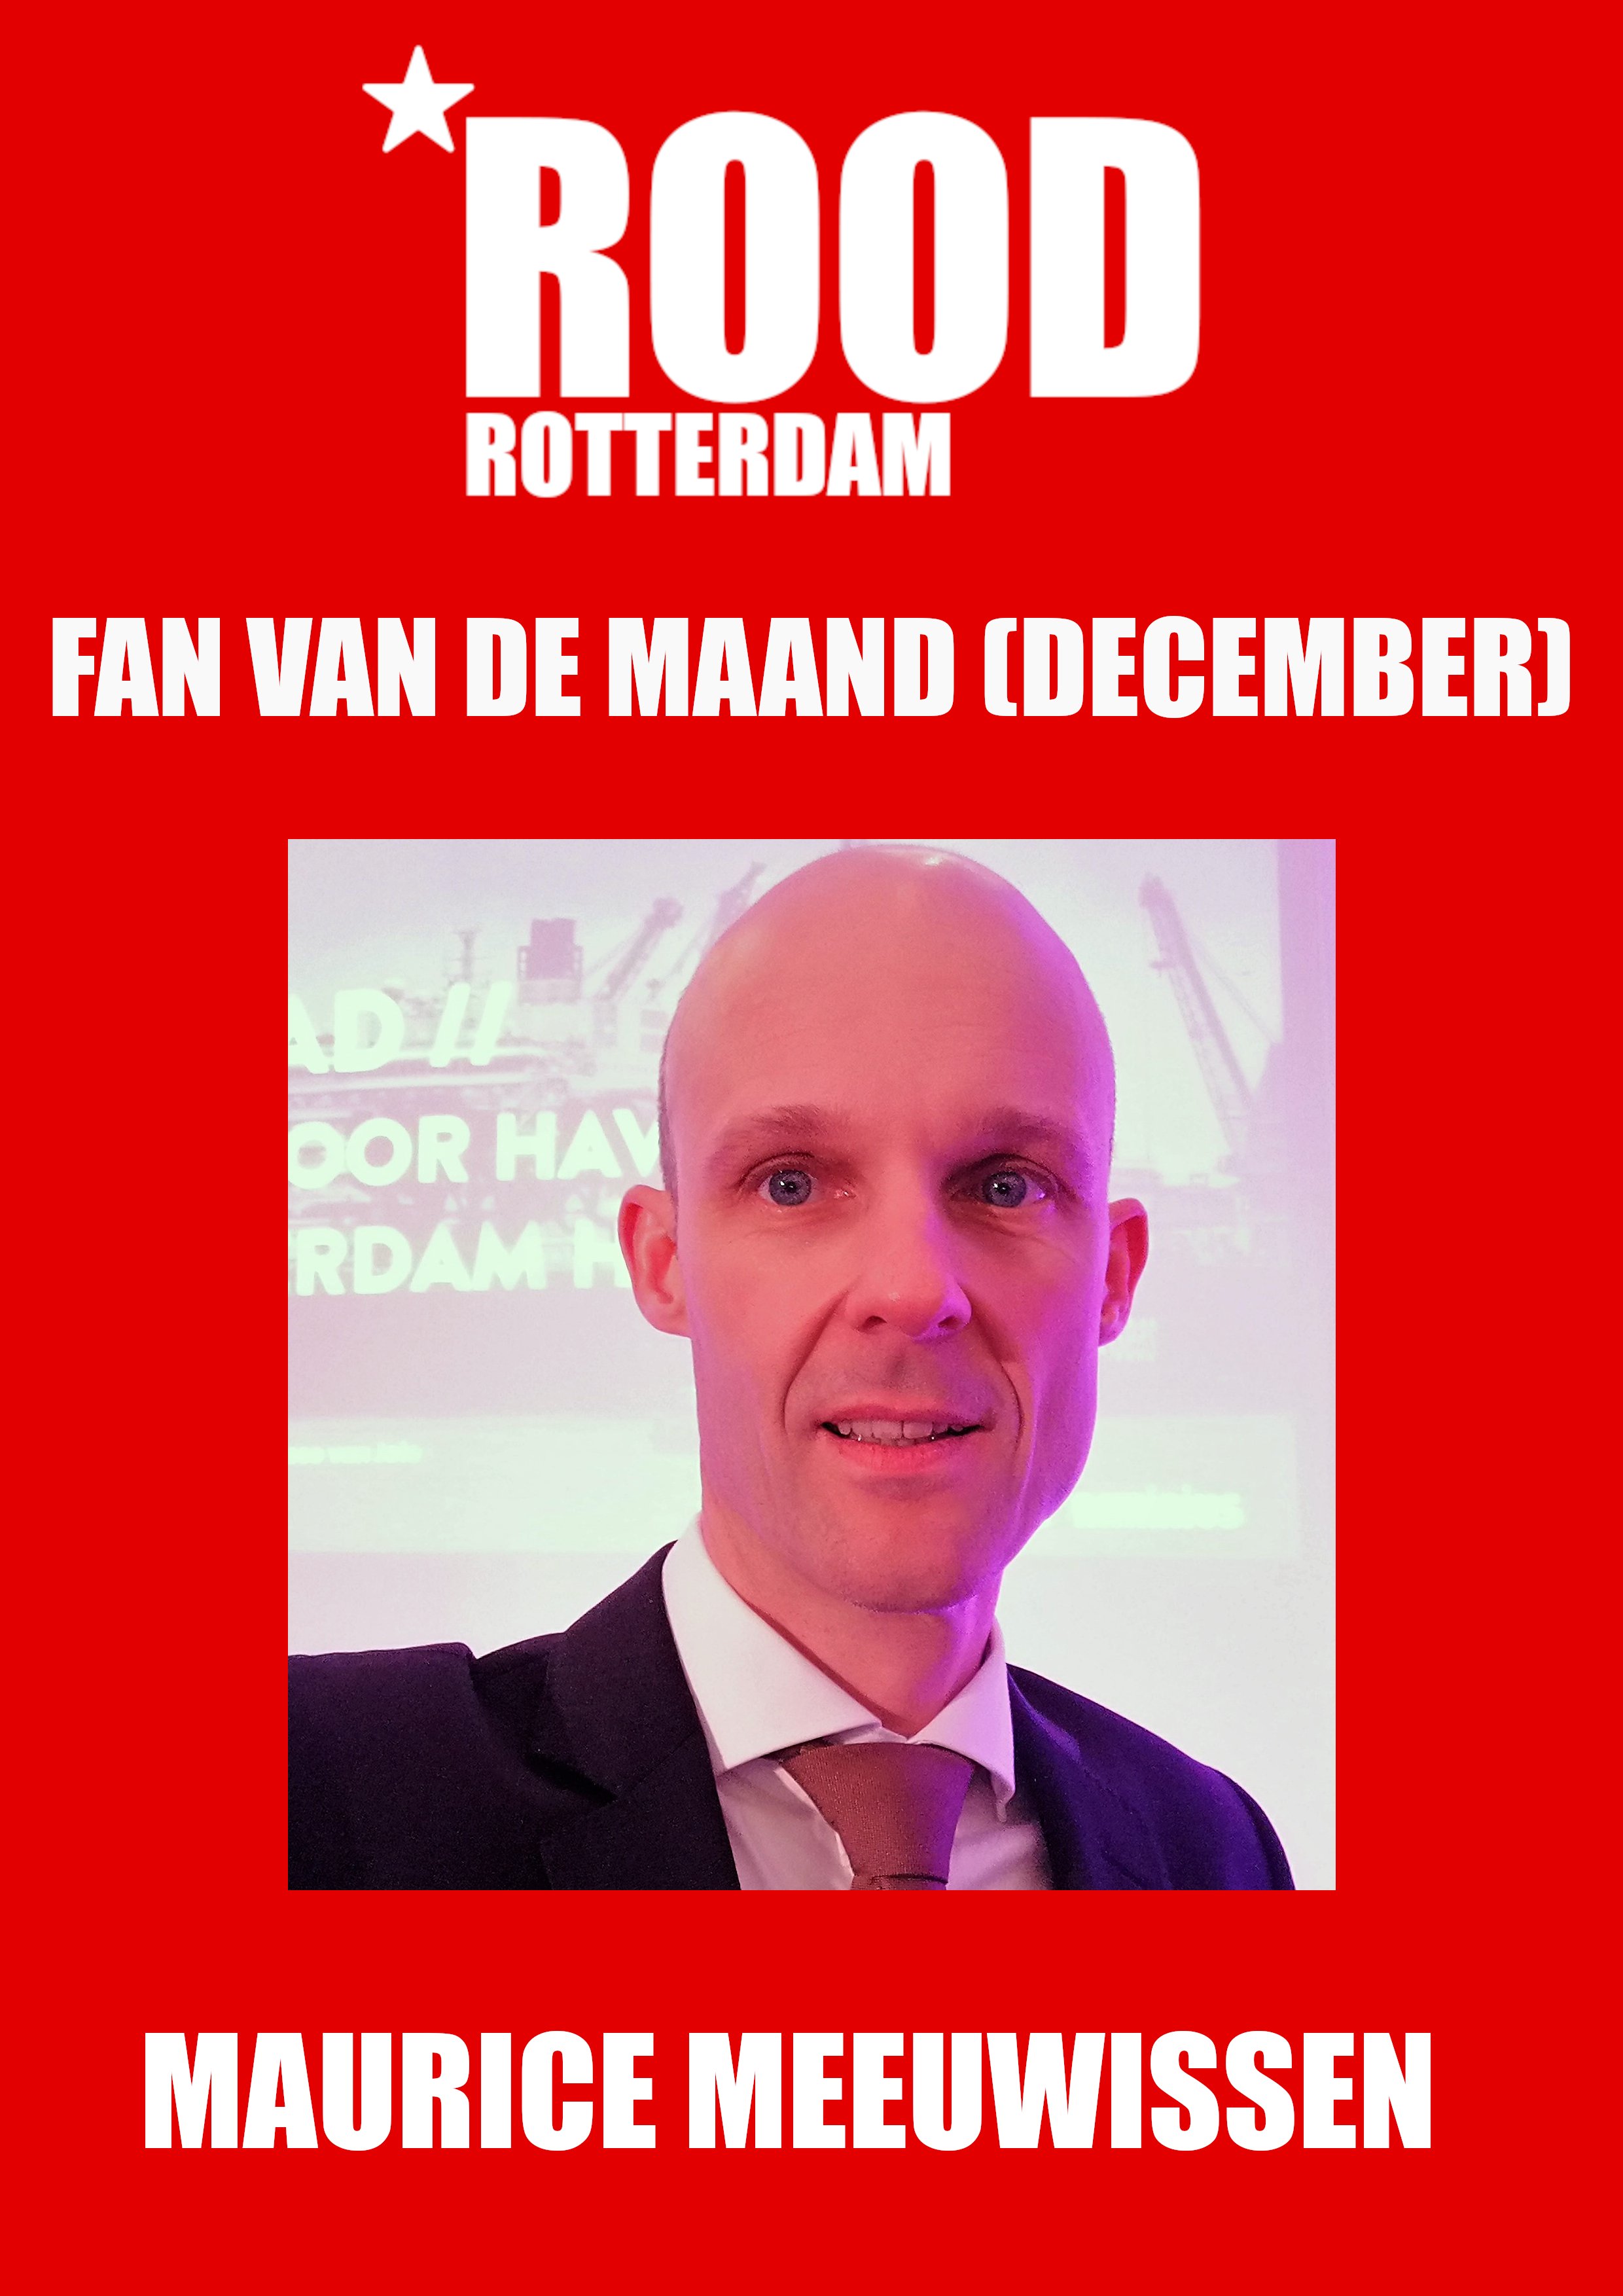 ROOD Rotterdam (@ROOD_Rotterdam)